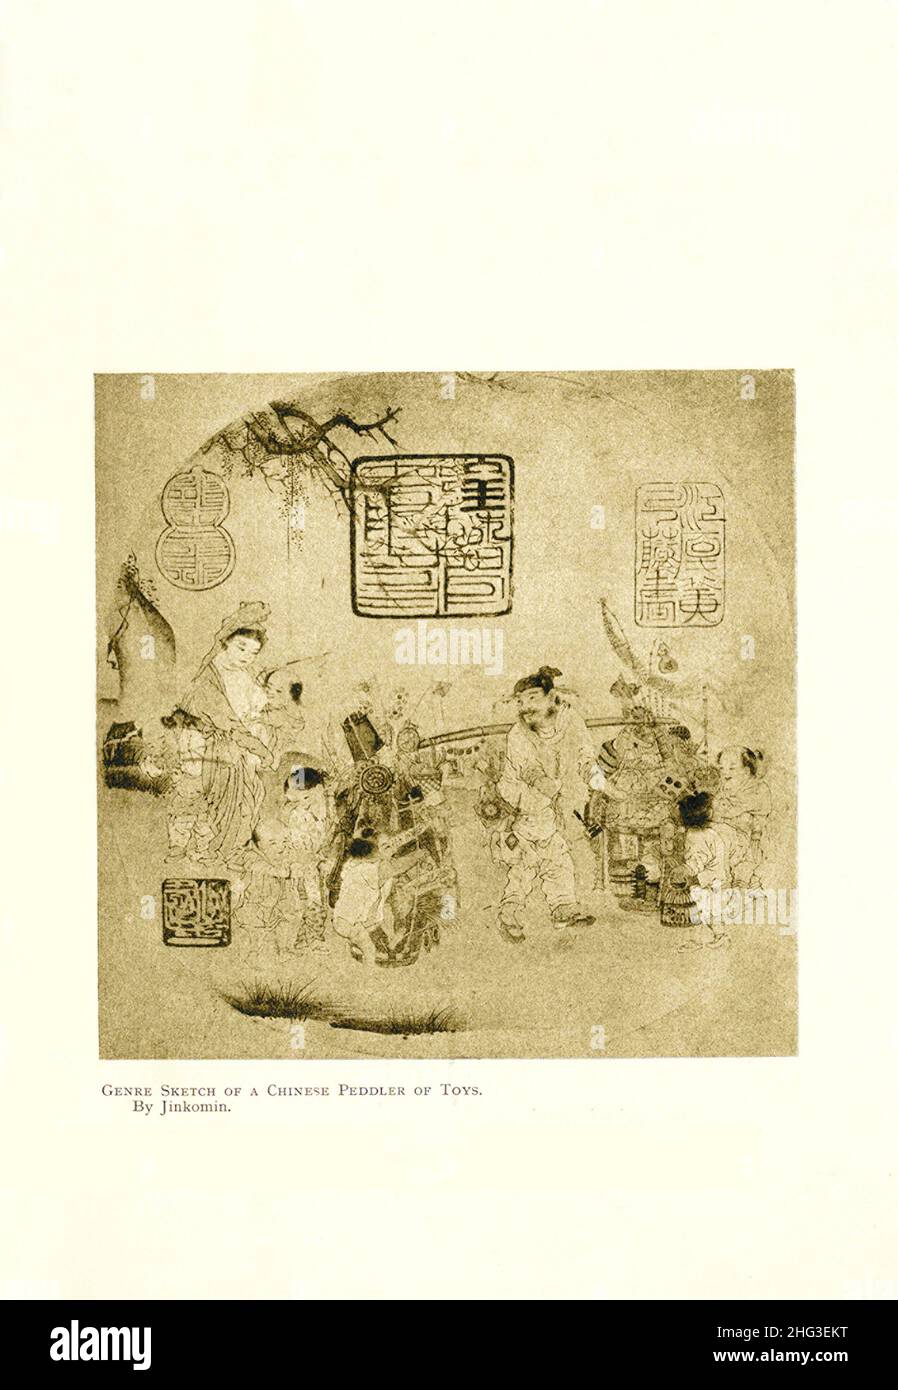 Disegno di genere di un Peddler cinese dei giocattoli. Di Jinkomin. Riproduzione di un'illustrazione del libro di 1912 Foto Stock